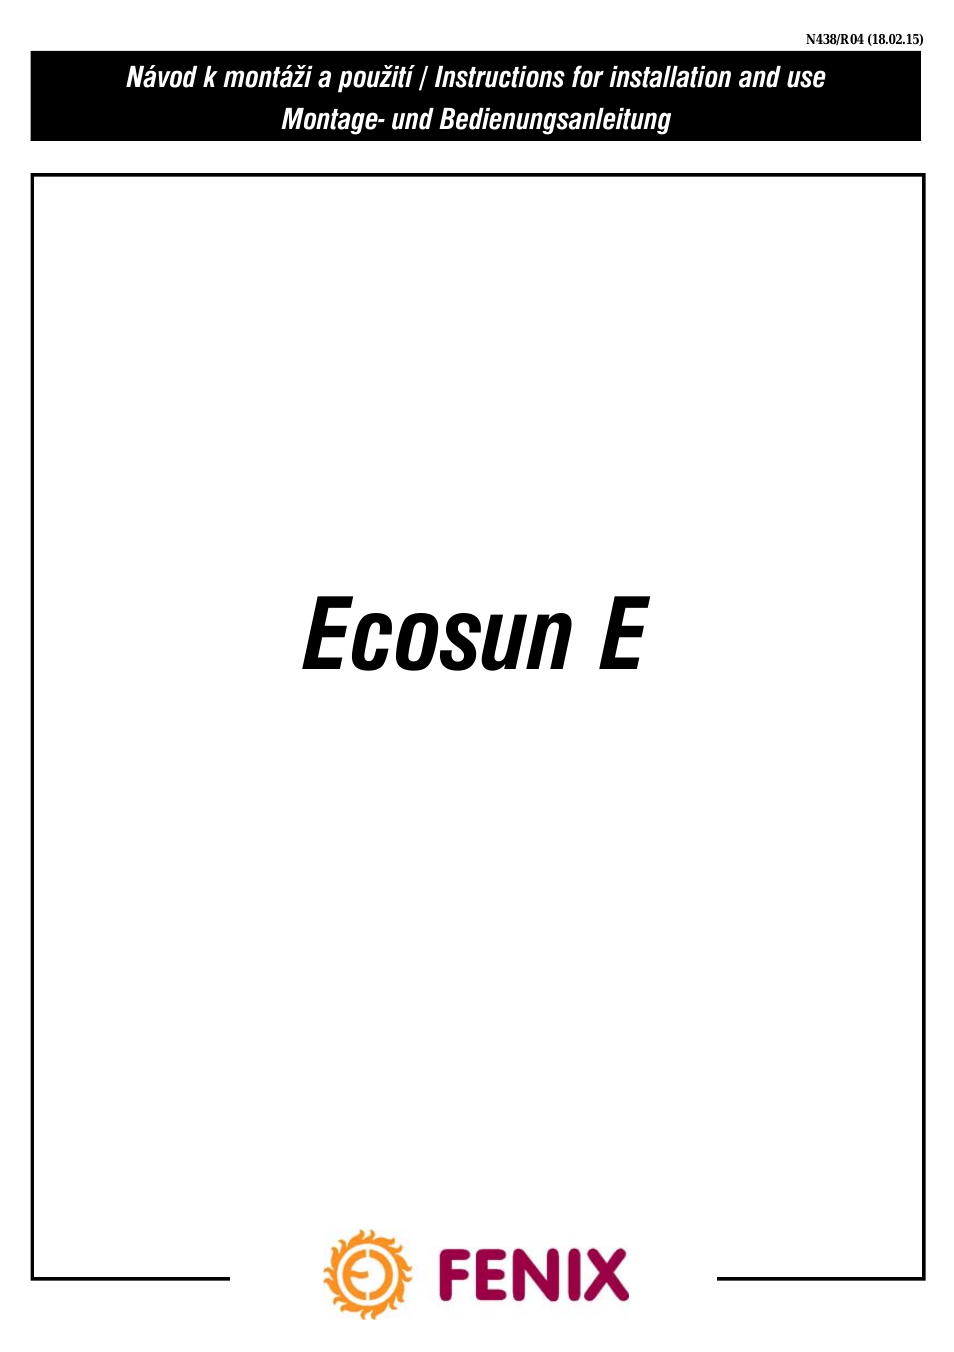 ECOSUN E